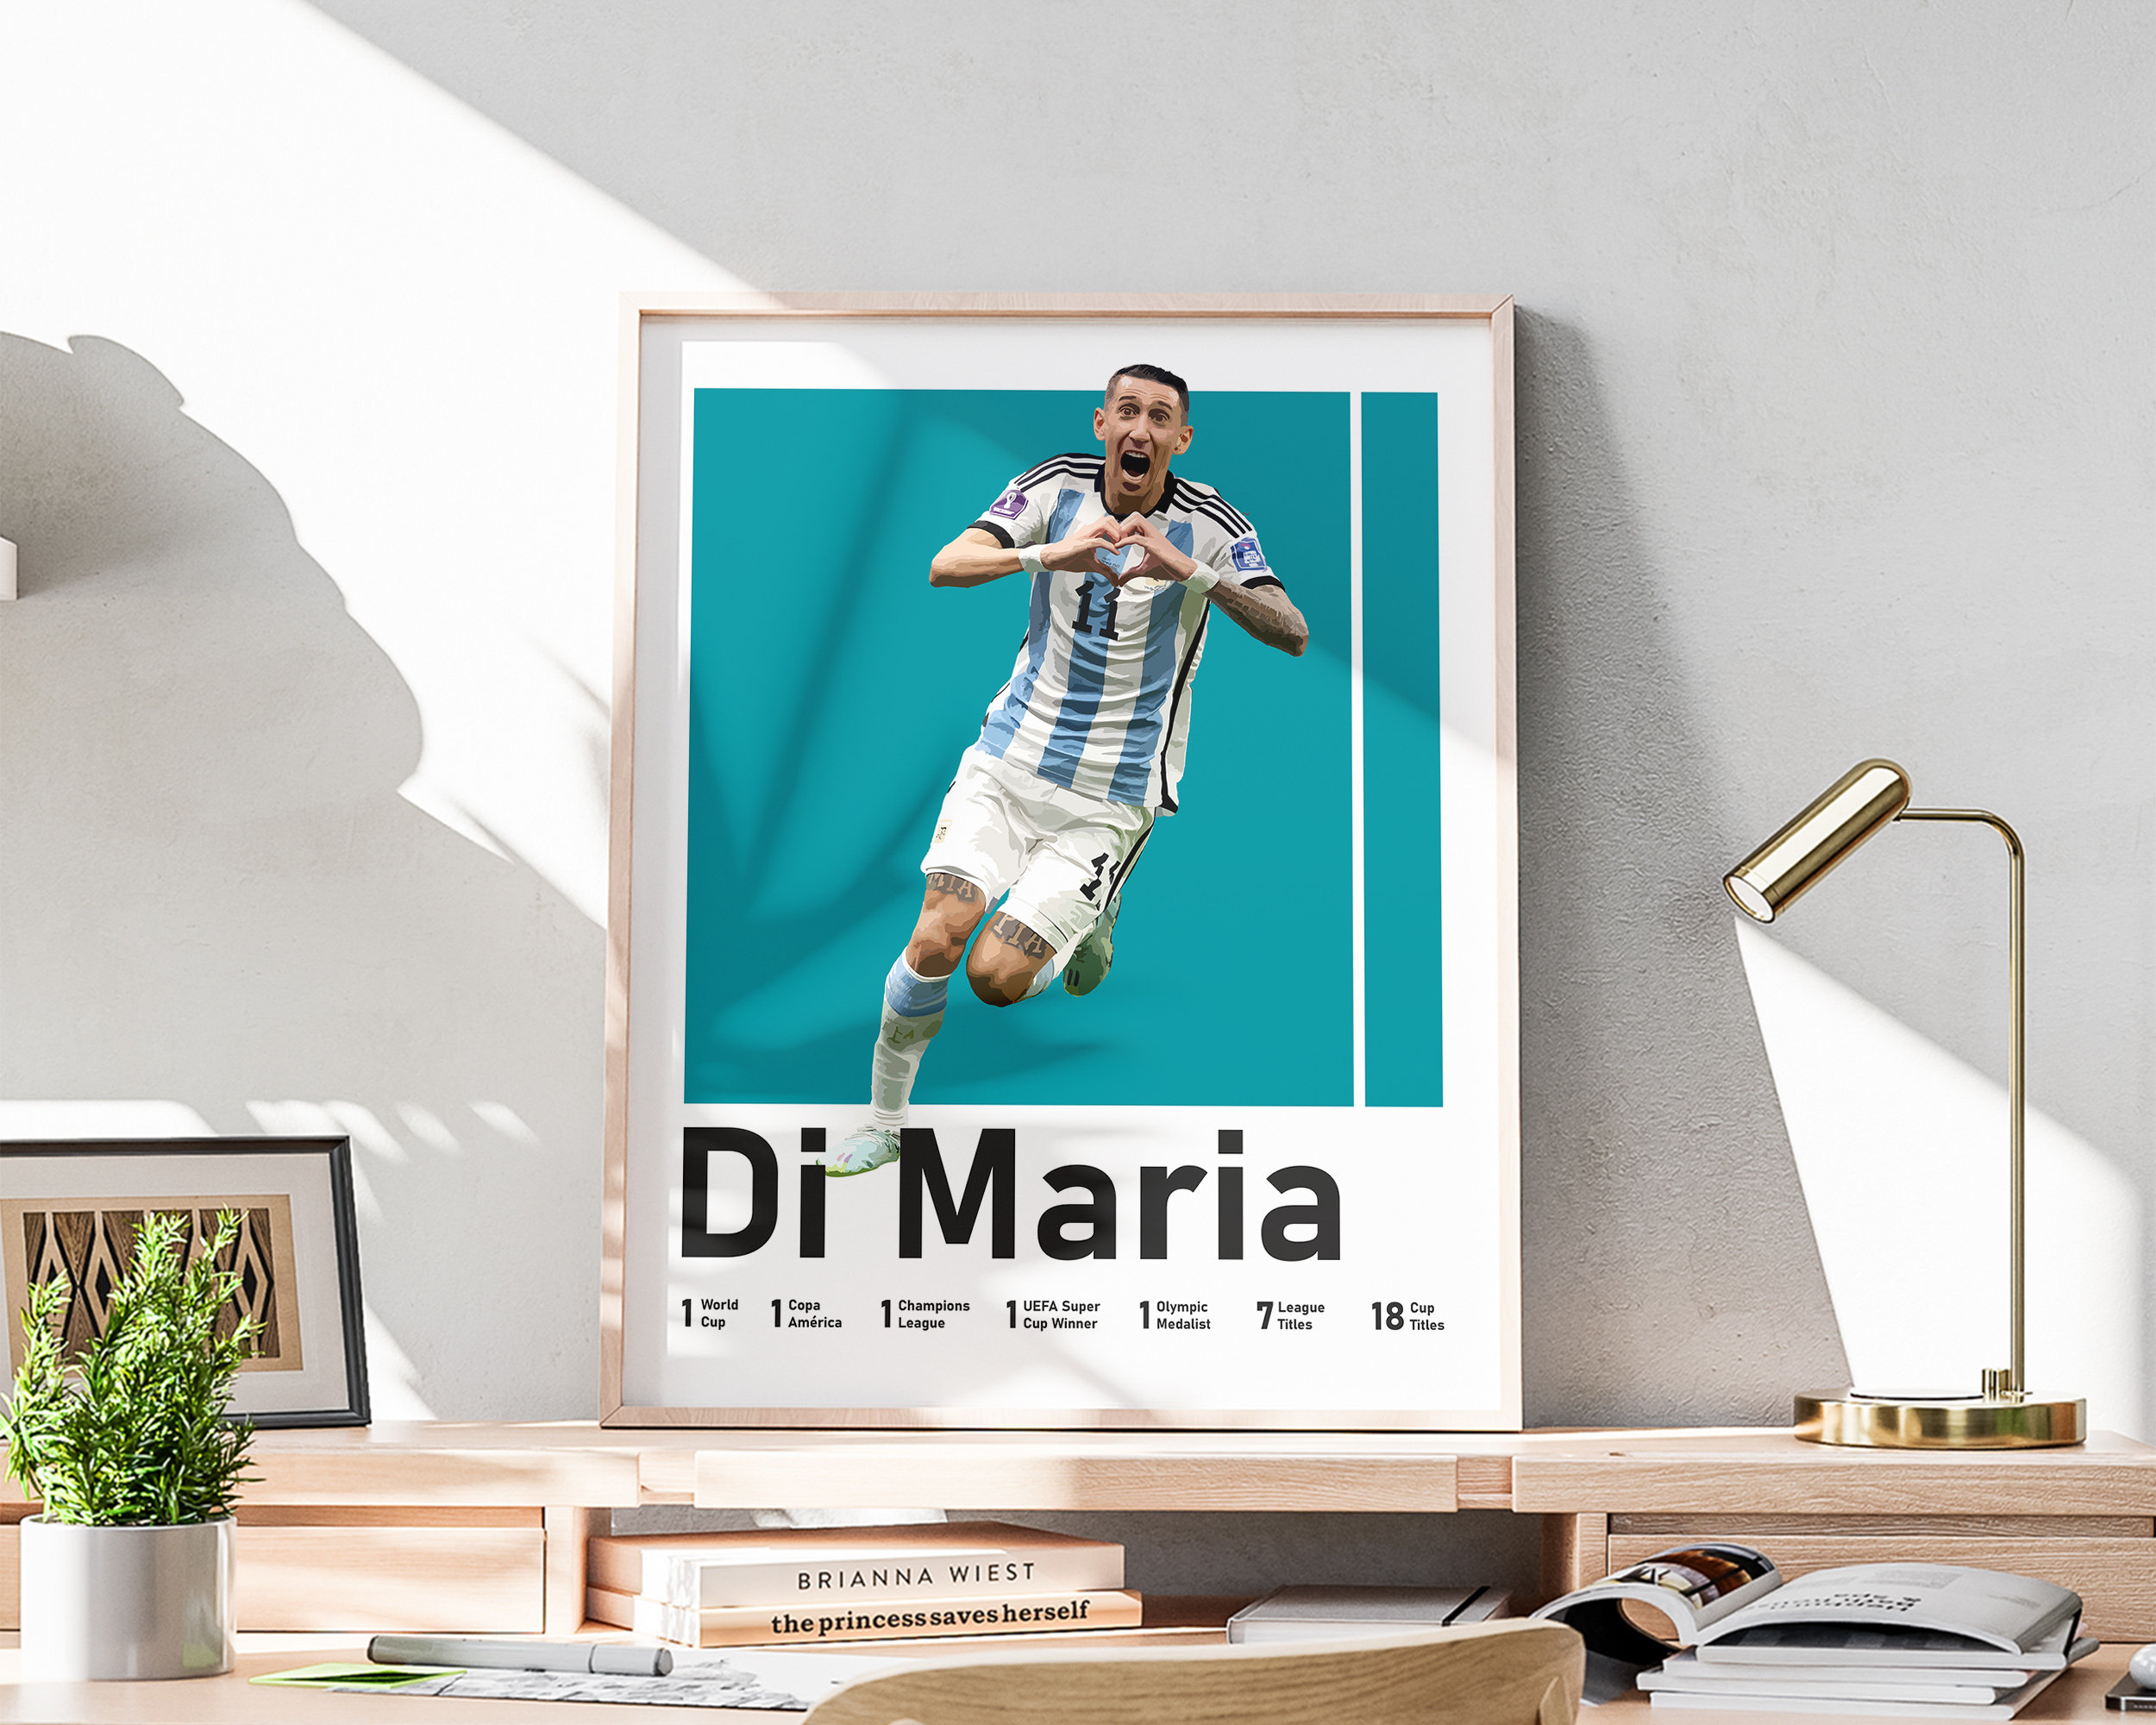 Argentina SoccerStarz Di Maria